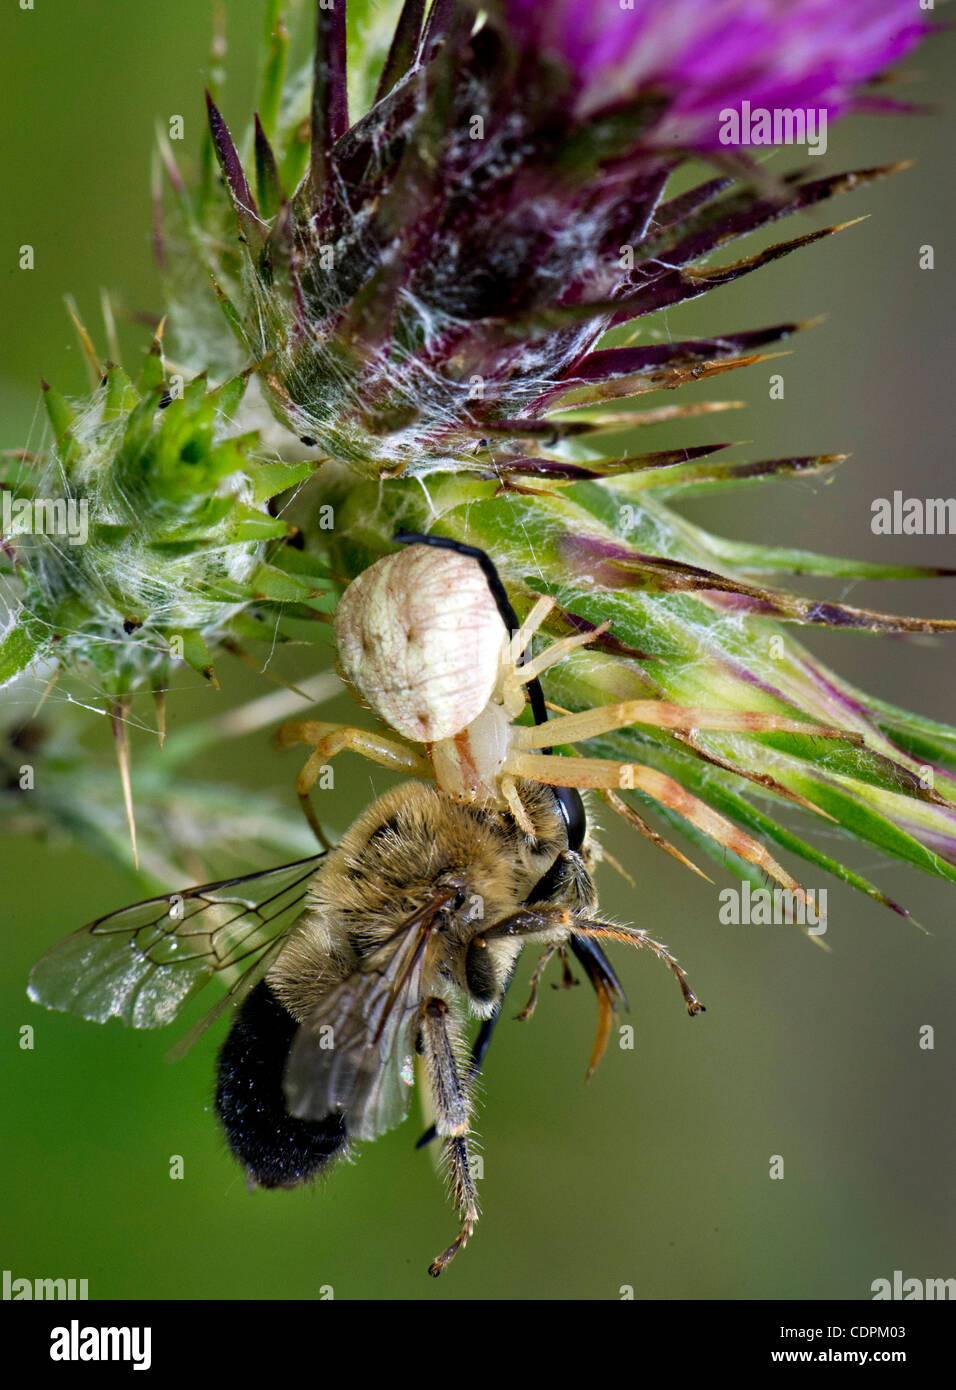 24 maggio 2011 - Kellogg, Oregon, Stati Uniti - Un grandi predatori spider afferra una bee dopo un agguato attacco su un thistle cresce su una collina nei pressi di Kellogg. (Credito Immagine: © Robin Loznak/ZUMAPRESS.com) Foto Stock